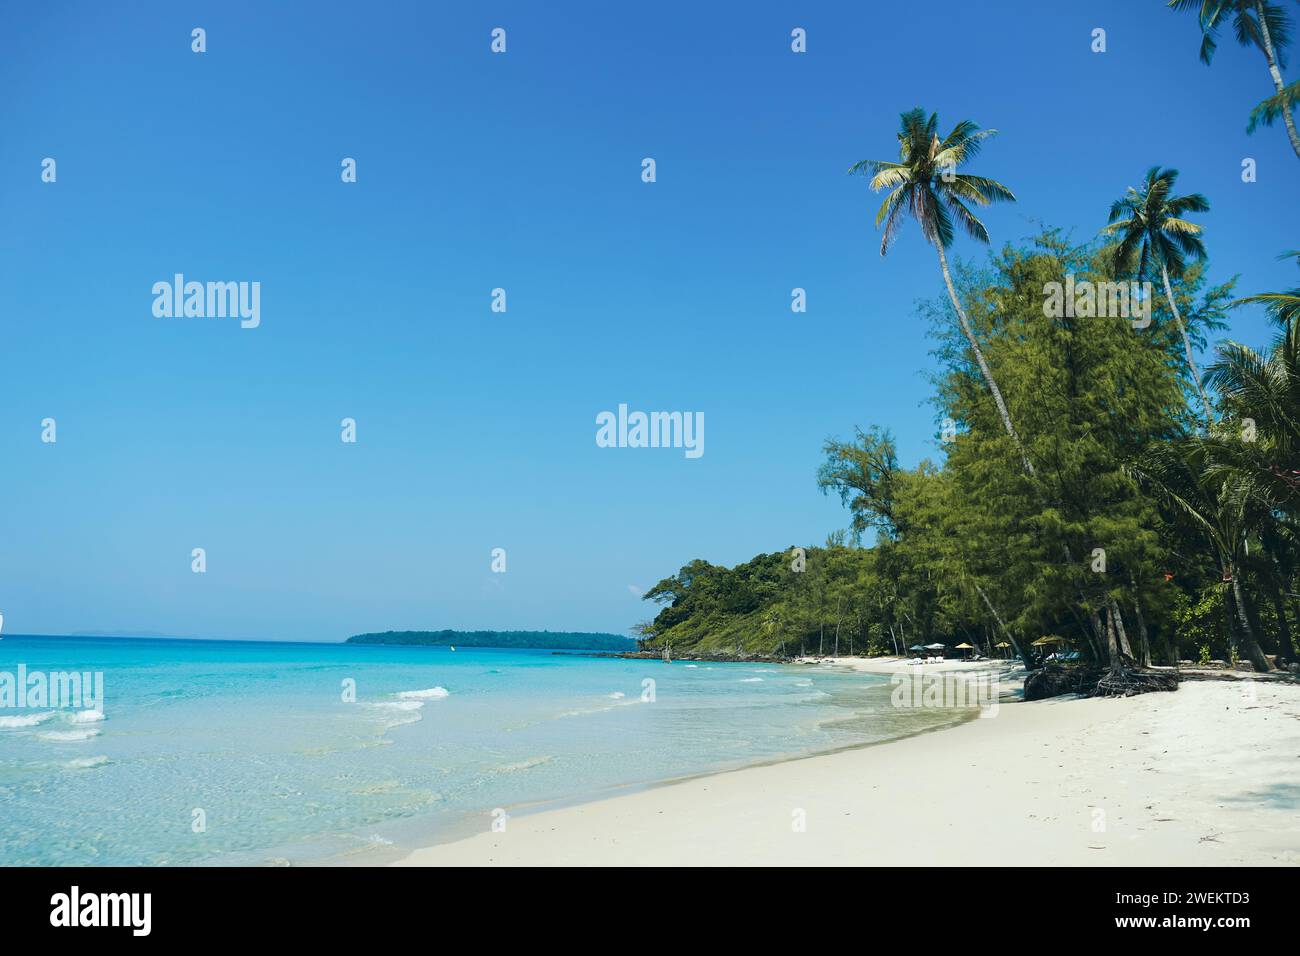 Wunderschöner Strand mit Palmen und türkisfarbenem Meer auf Koh Kood Island, Thailand. Tropischer Meeresstrand mit Sand und Kokospalmen Hintergrund mit klarem blauem Himmel. Su Stockfoto